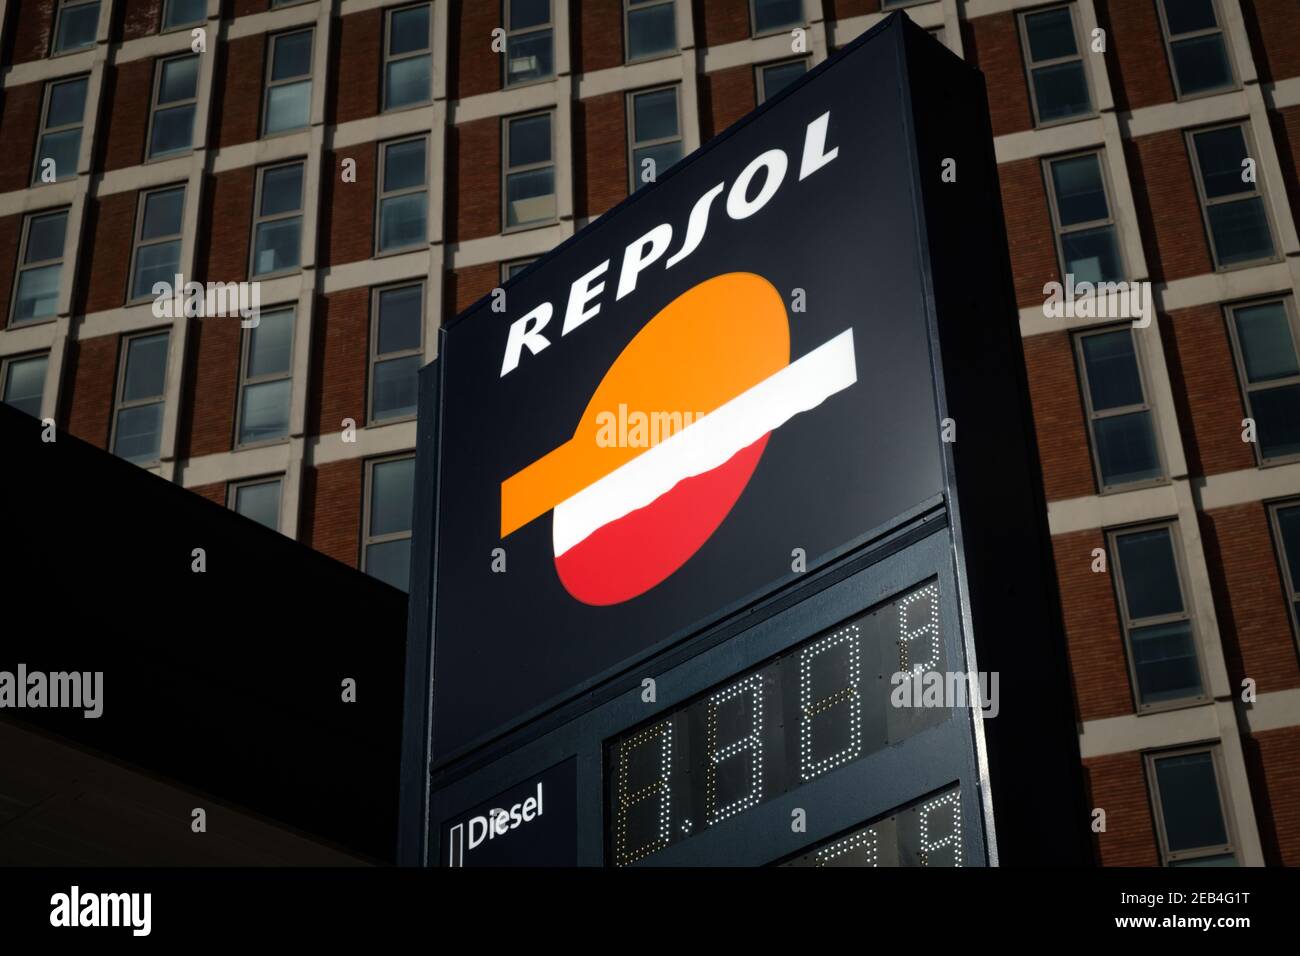 Logo Repsol in una stazione di servizio all'interno della città contro una facciata dell'edificio. Repsol è un'importante azienda energetica spagnola con sede a Madrid Foto Stock